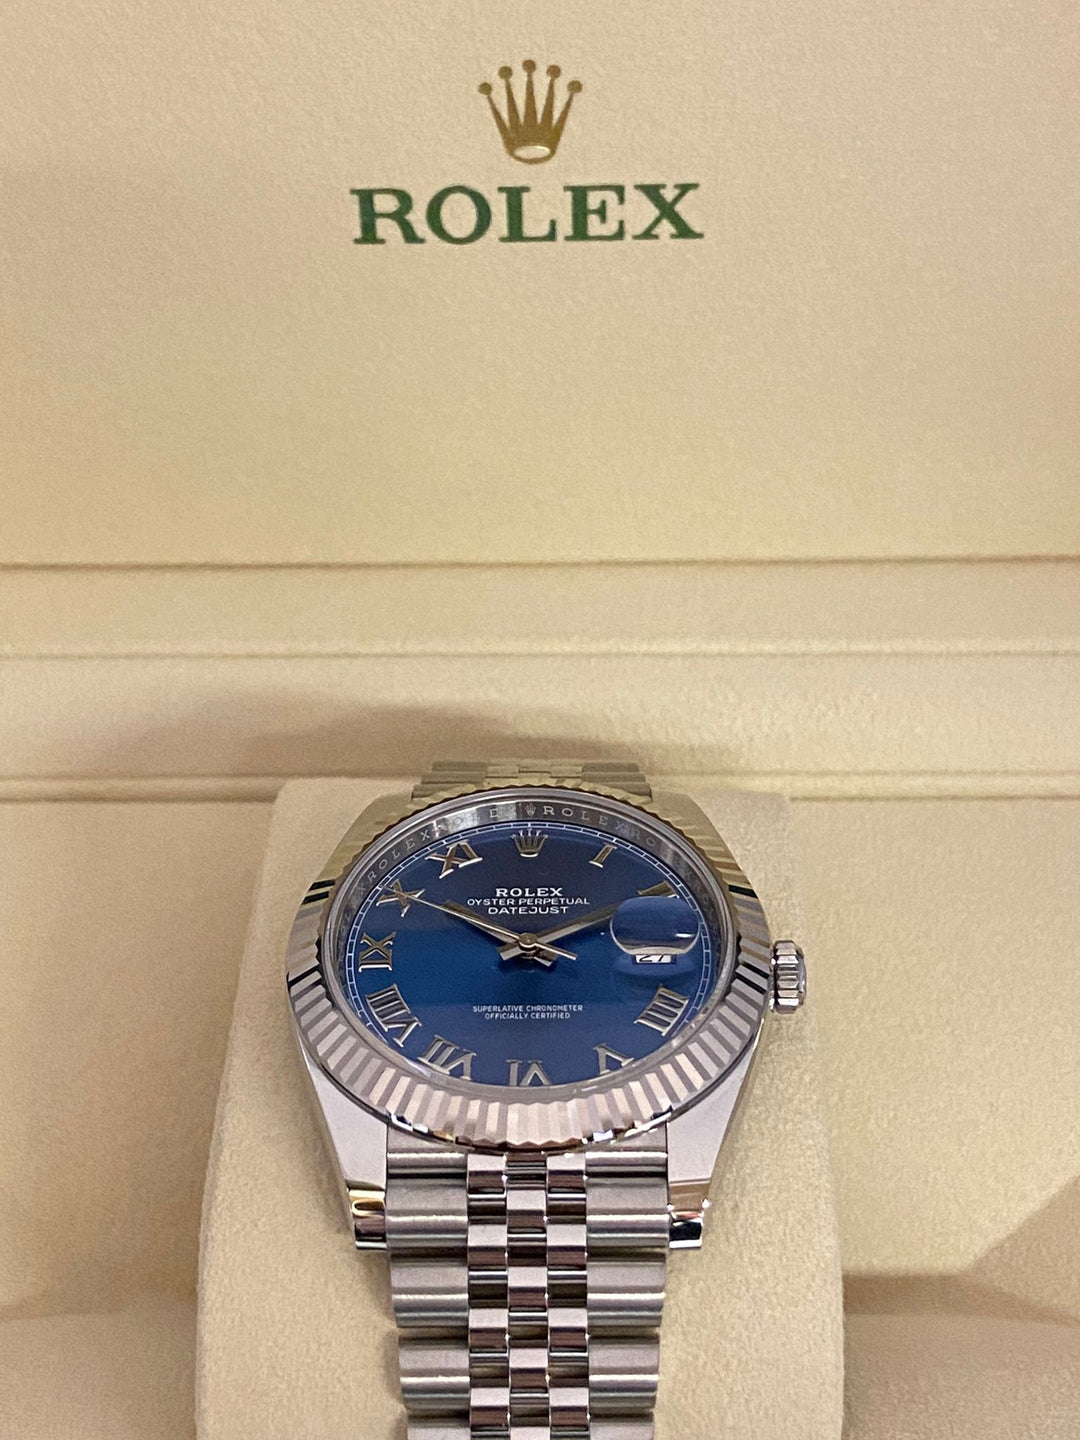 Montre Rolex Datejust 41 Lunette Cannelée Cadran Bleu 126334-0026 - Occasion - Occasion - Les Champs d'Or